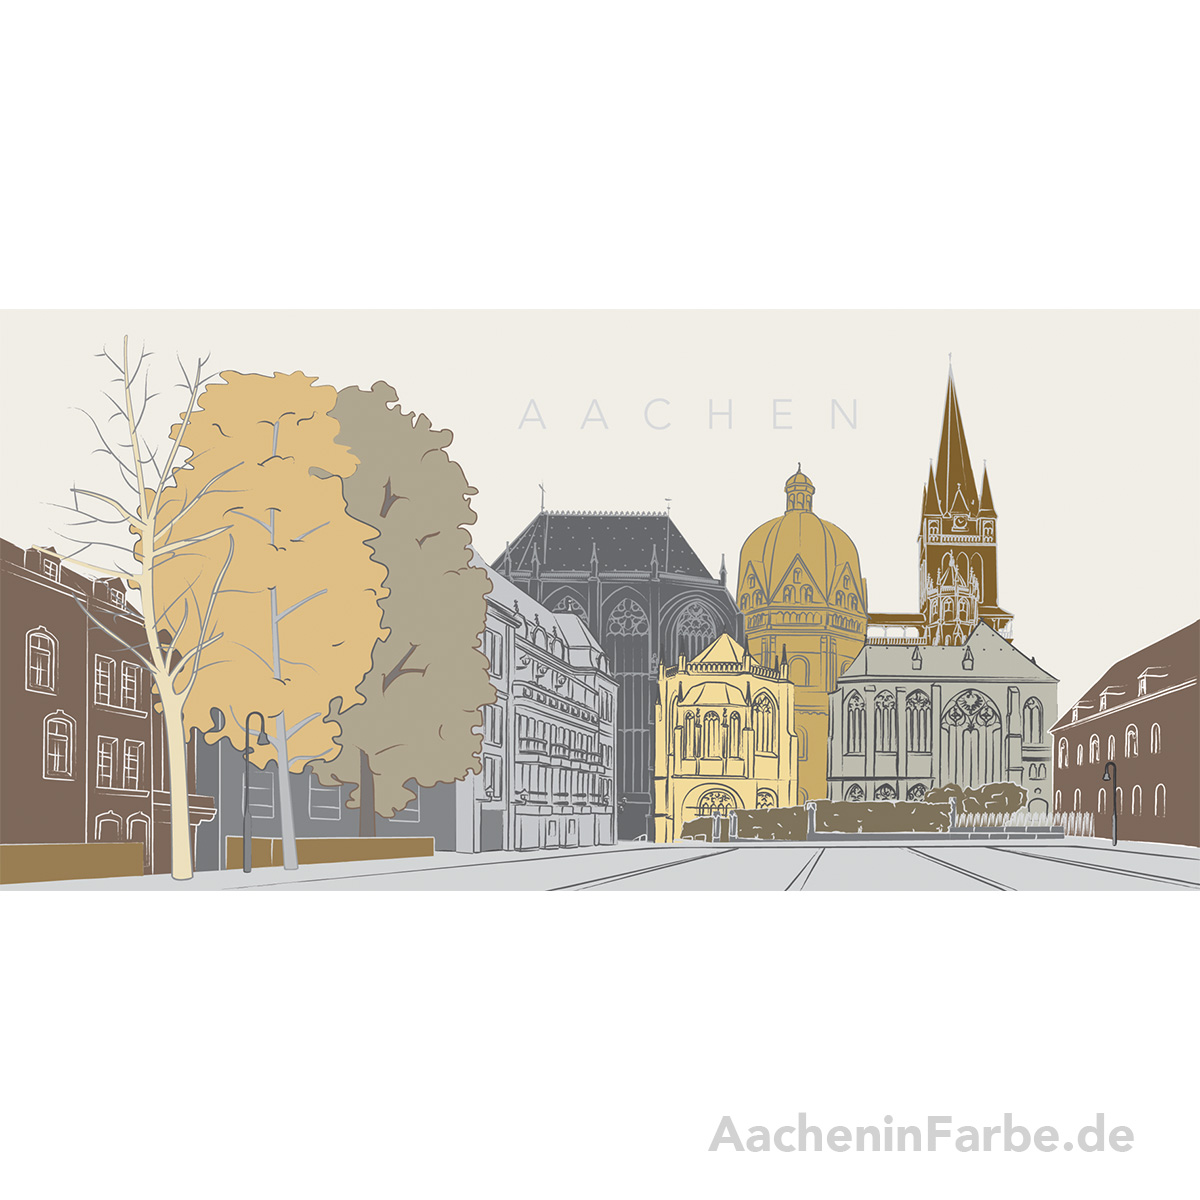 Grußkarte "Aachen" Aachener Dom, pastell